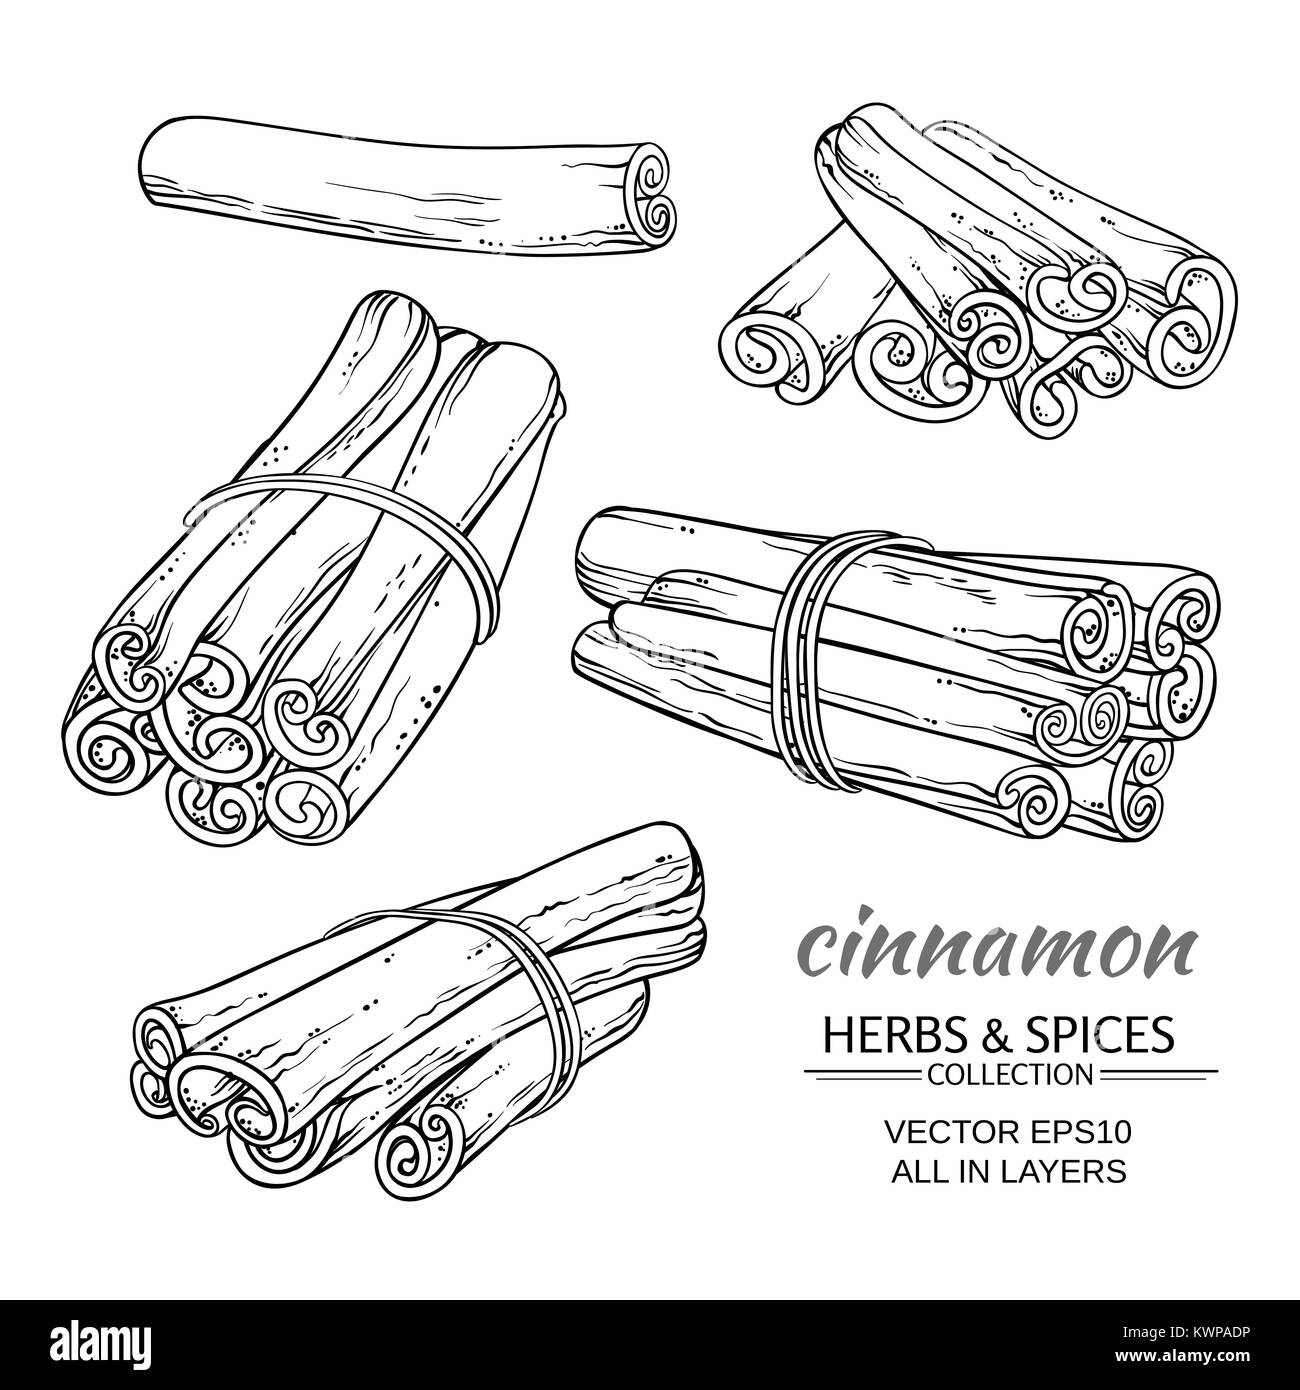 cinnamon sticks vector set on white background Stock Vector